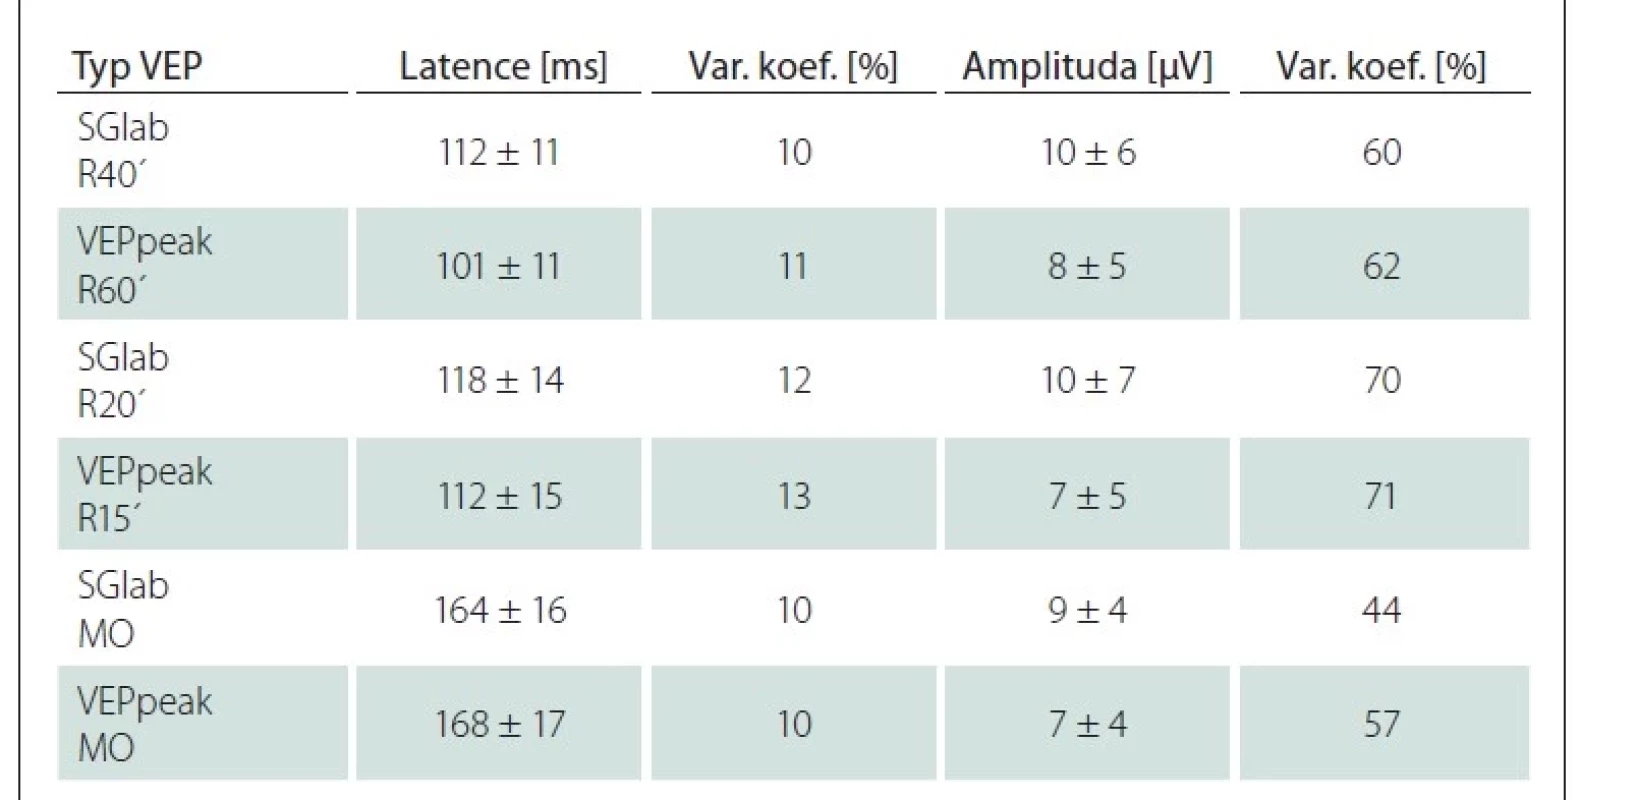 Srovnání parametrů VEP ze standardního vyšetření (SGlab) a mobilním přístrojem
(VEPpeak) u 111 neuro-oftalmologických pacientů.